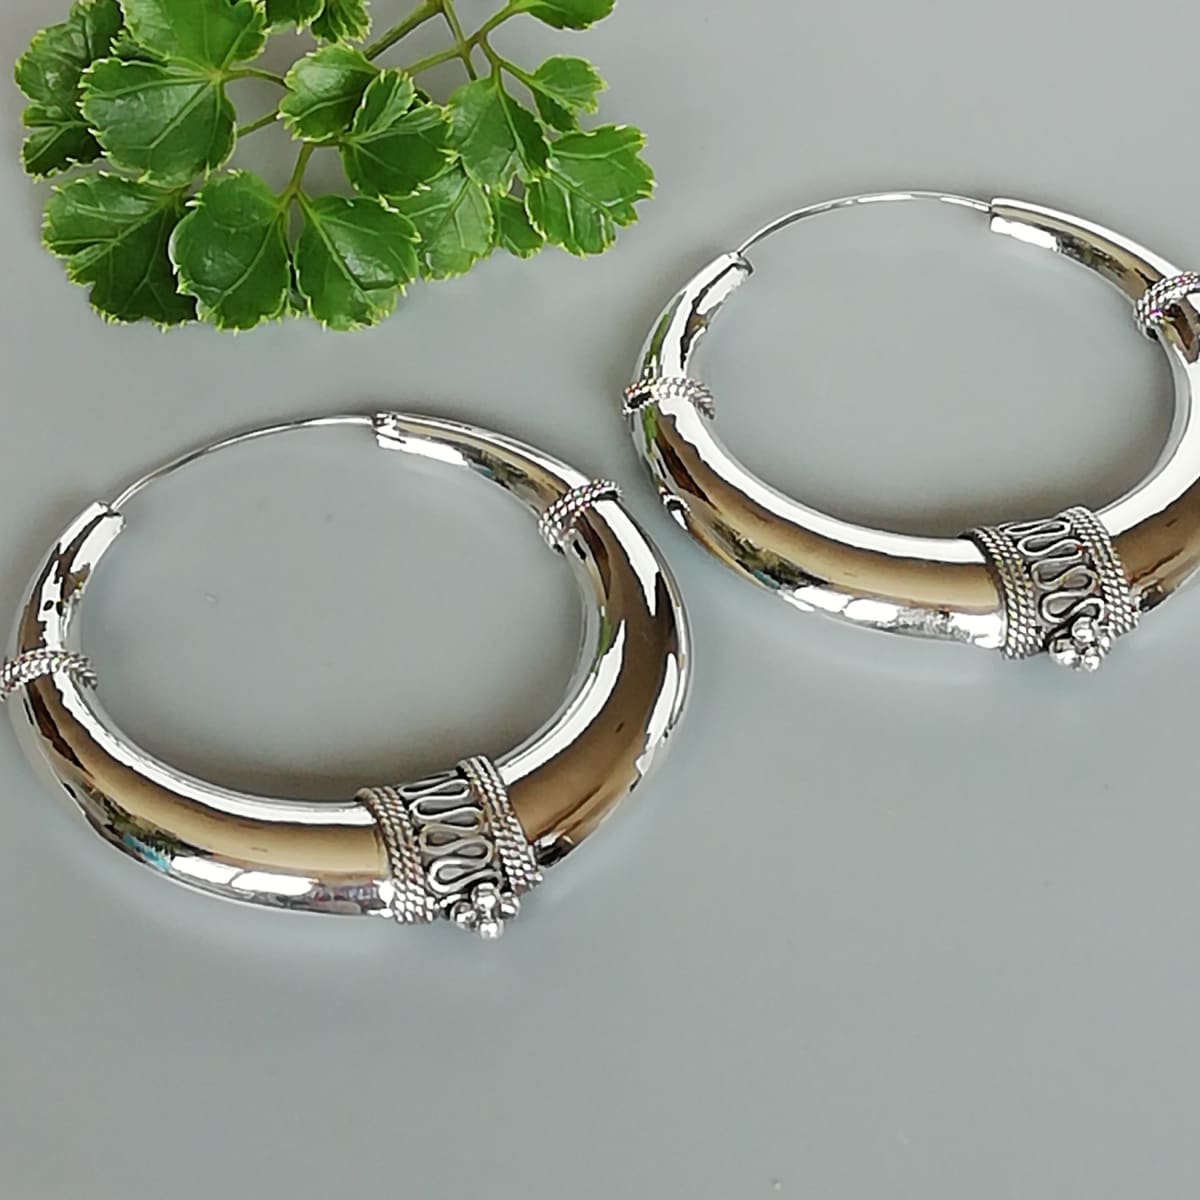 Sterling Silver Hoop Earrings - Xlarge Circle Shape